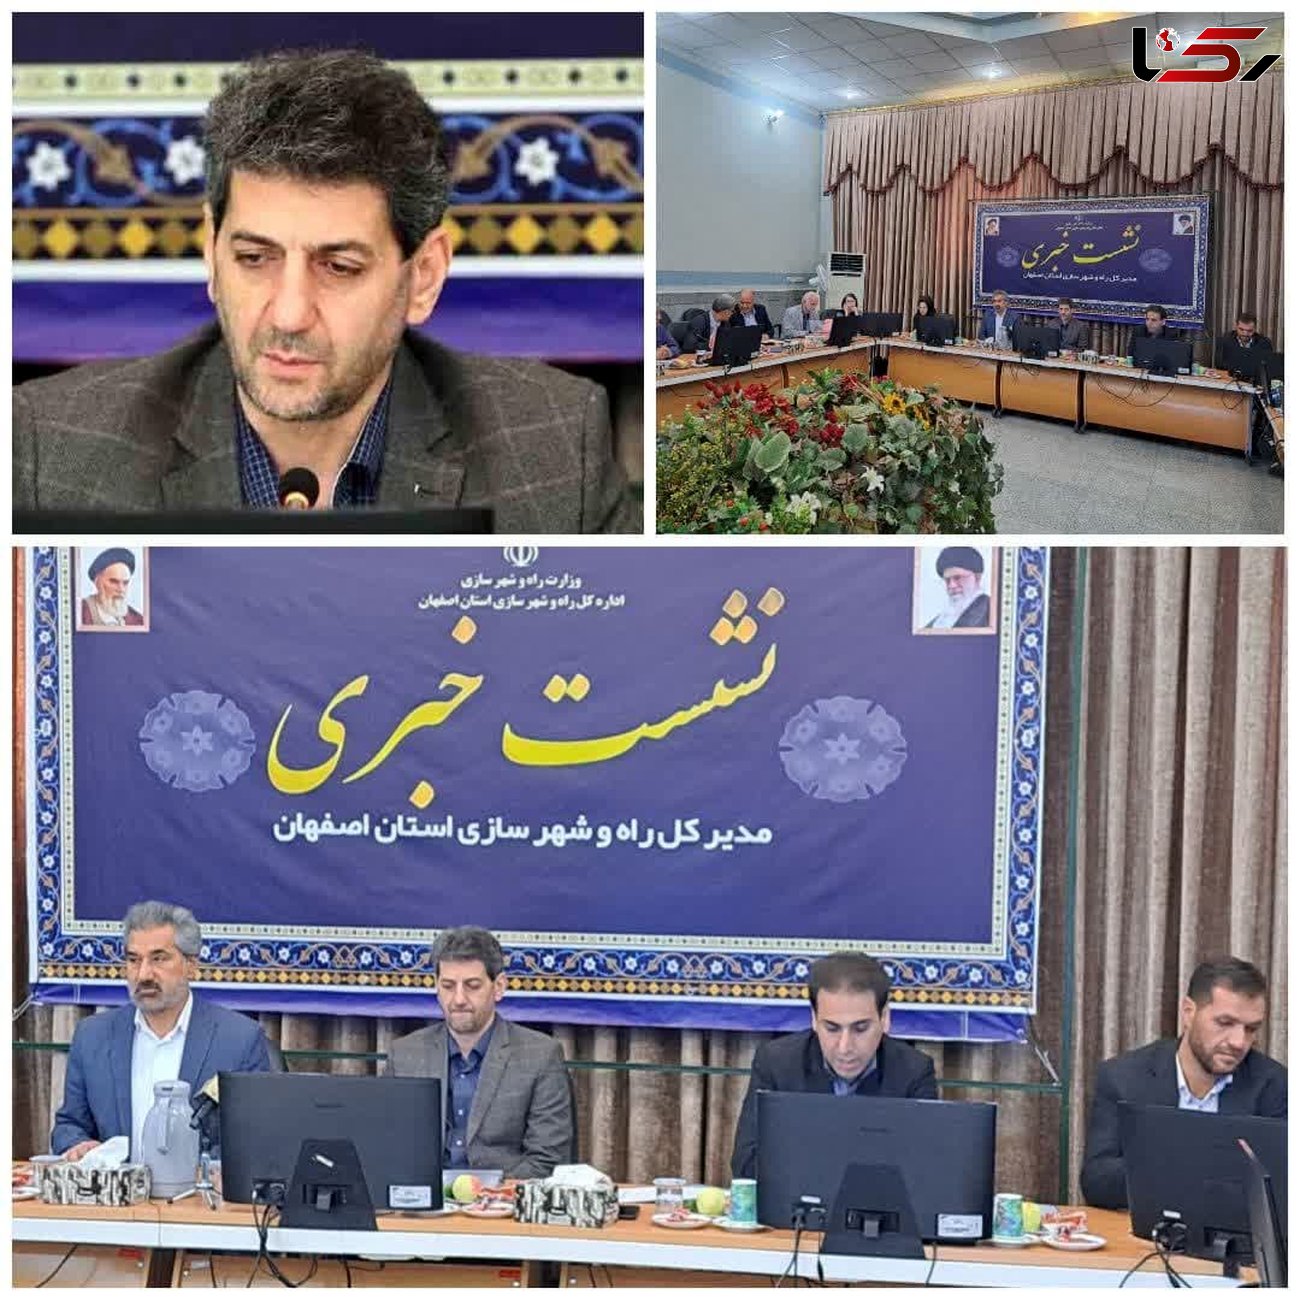 احداث چهارمین شهر جدید در اصفهان در دستور کار قرار گرفته است